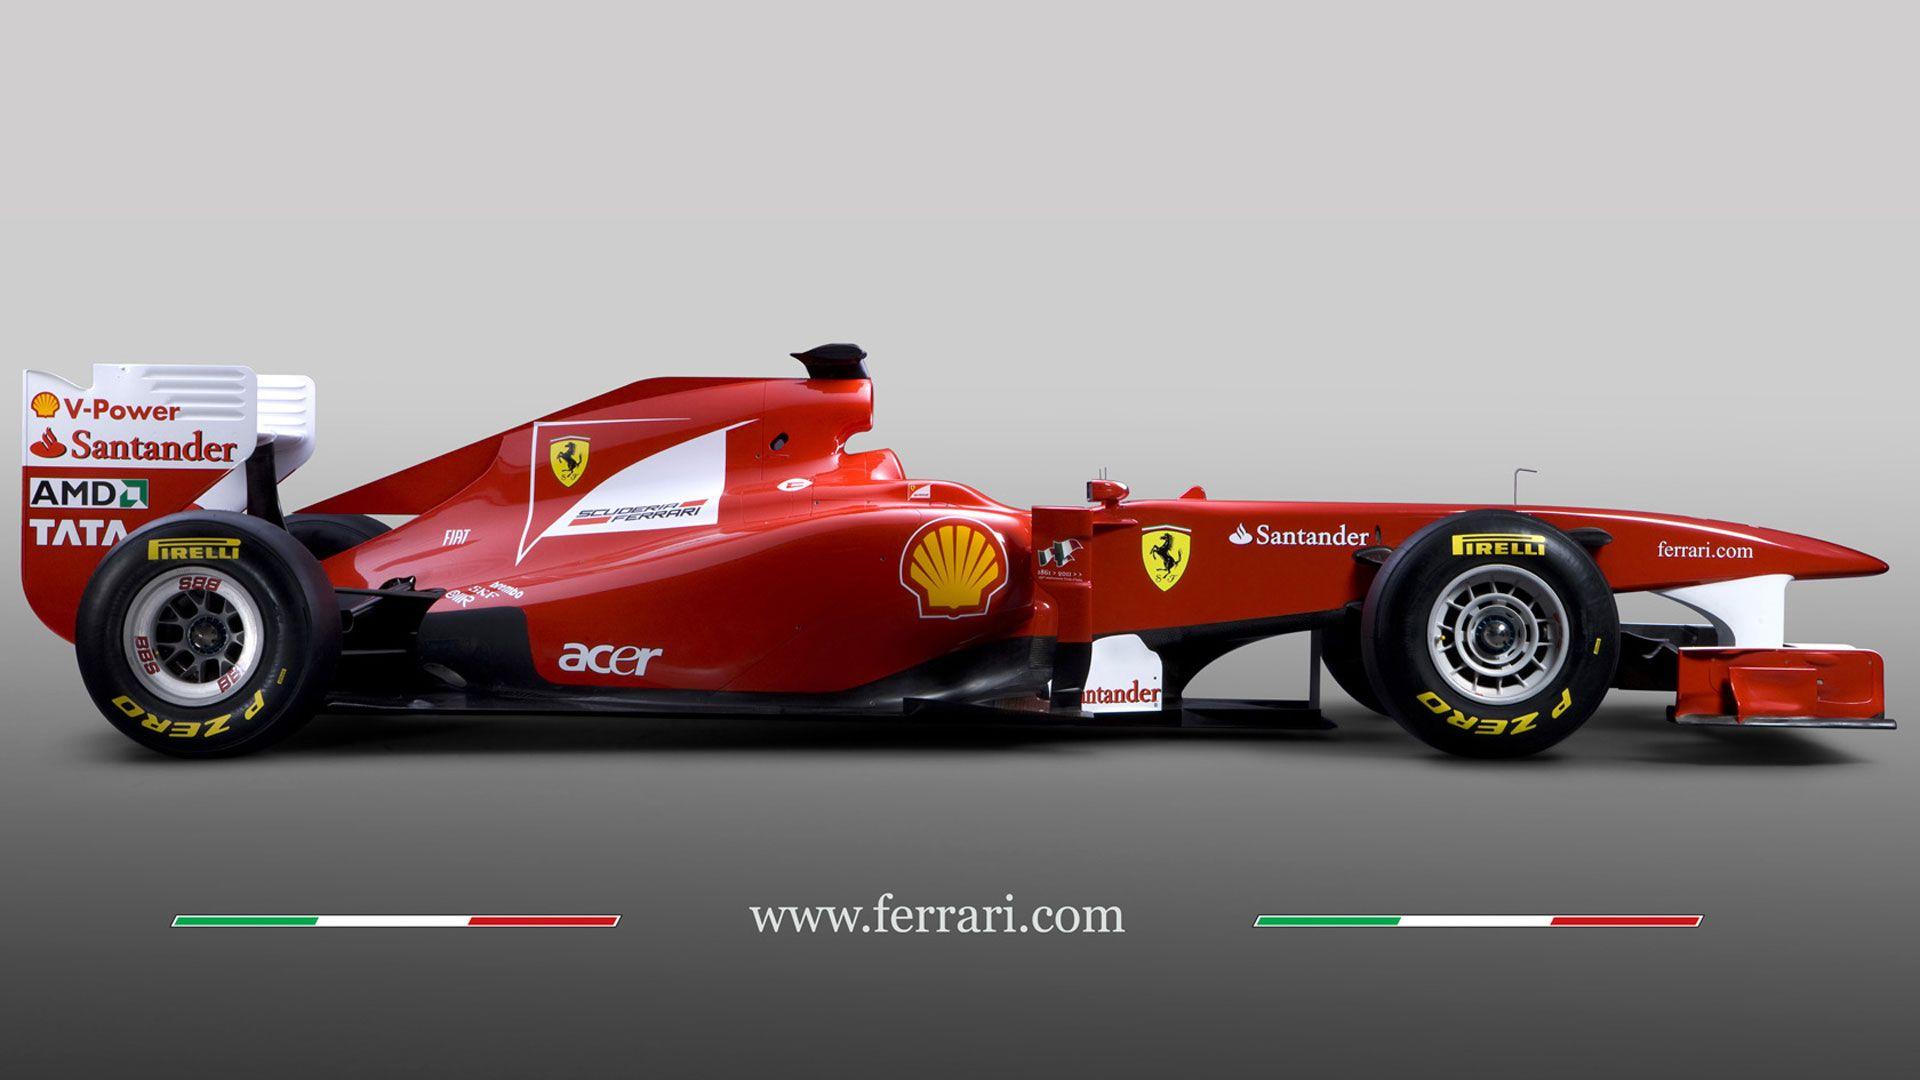 F1 Ferrari Wallpapers - Wallpaper Cave